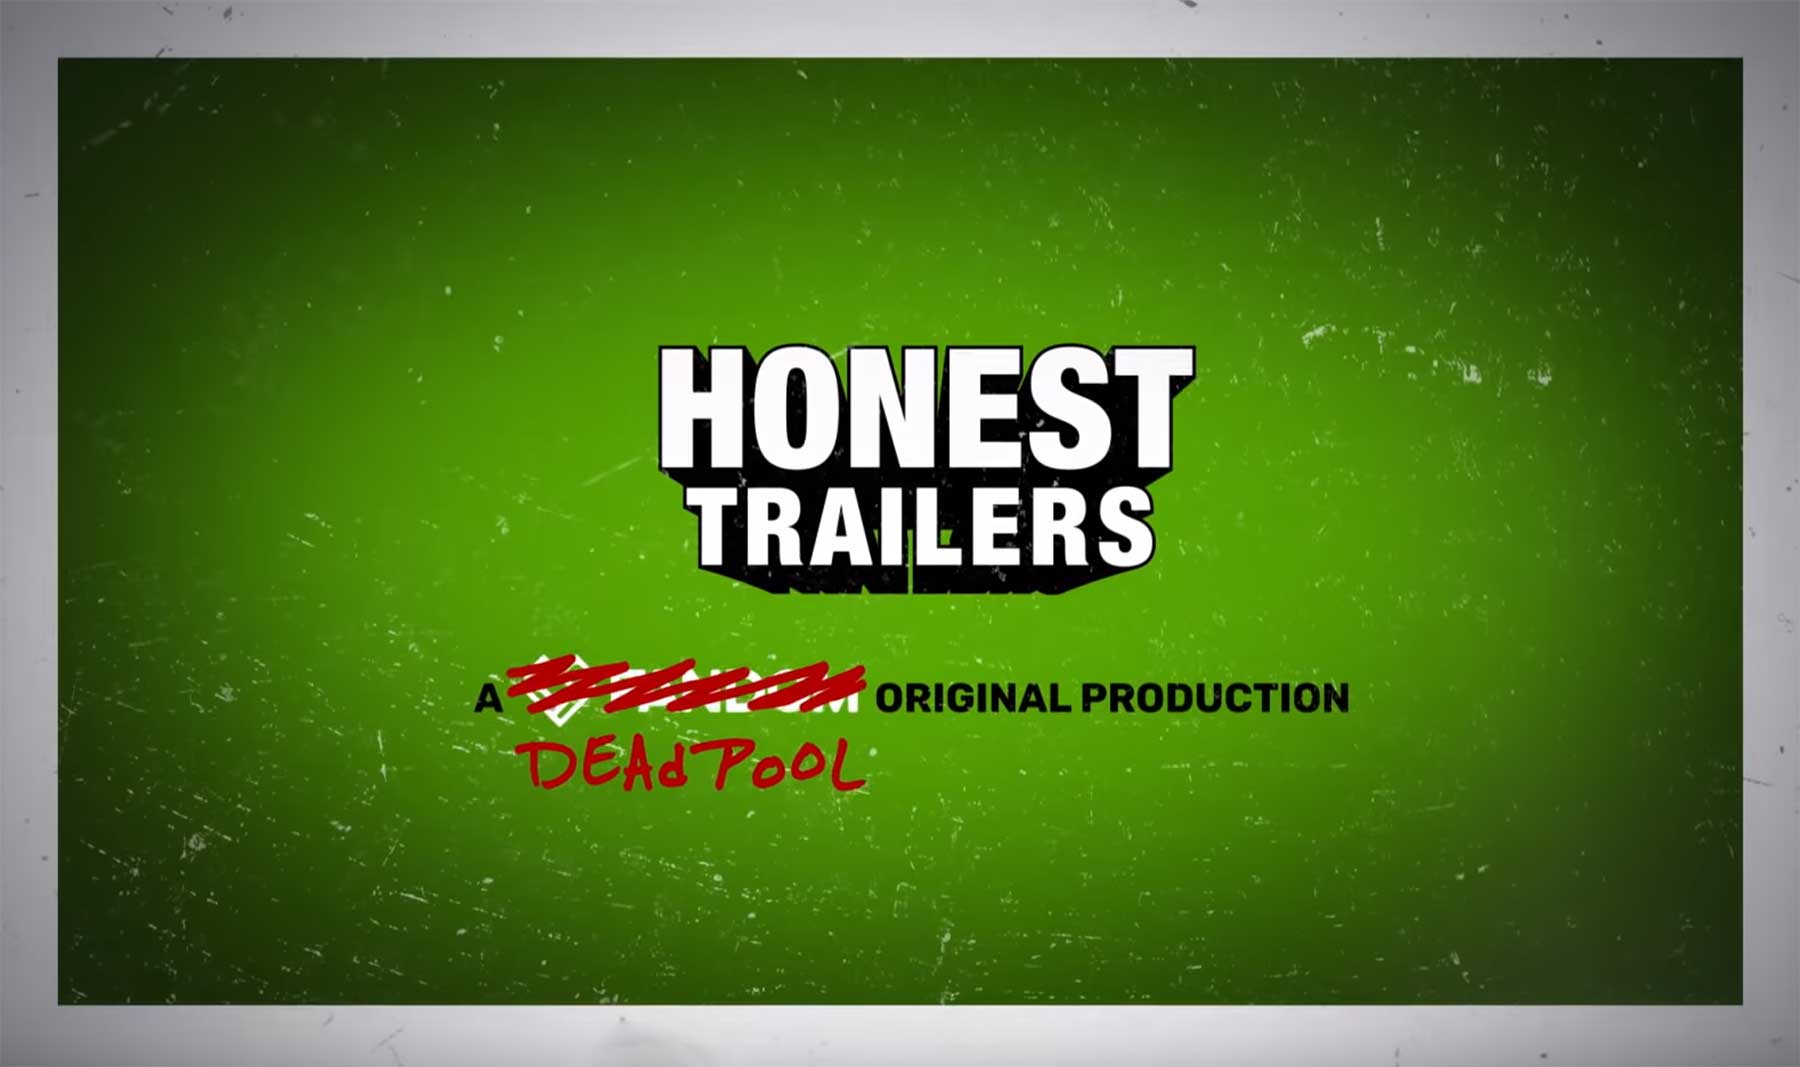 Deadpool übernimmt den Honest Trailer zu "Deadpool 2" deadpool-2-honest-trailer_01 